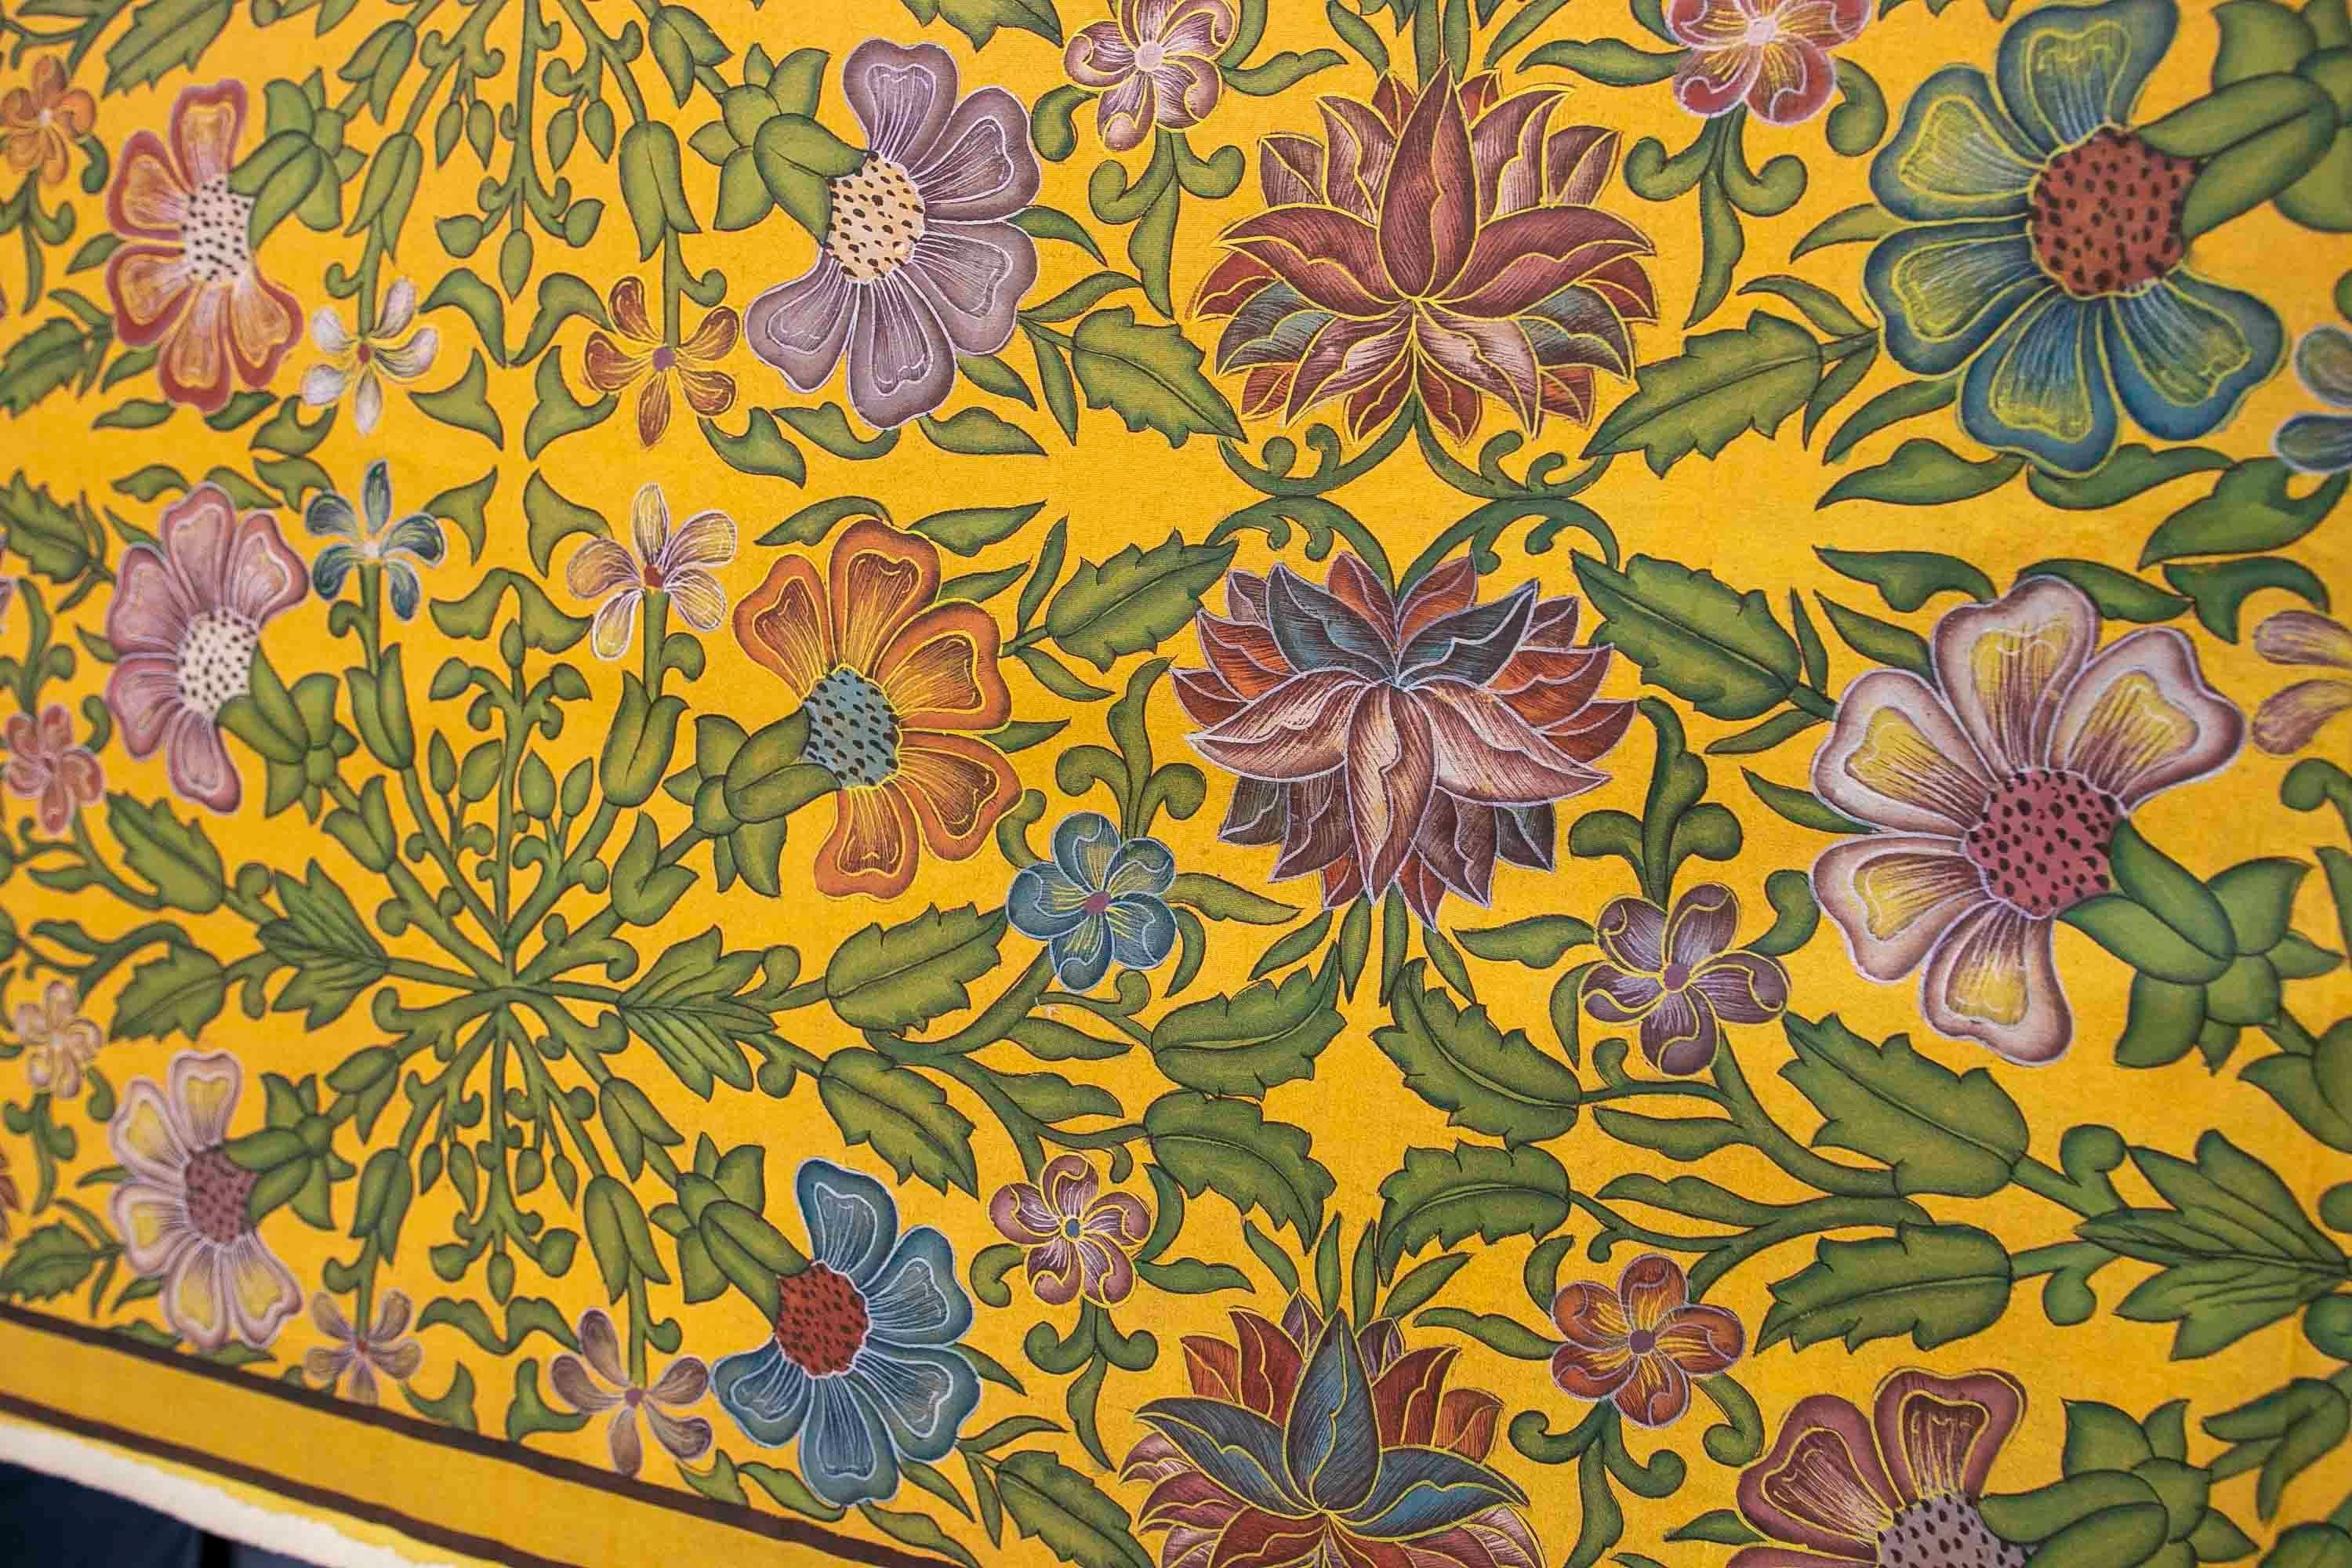 Cuadro de flores pintado a mano sobre tela años 1970 en tonos amarillos.